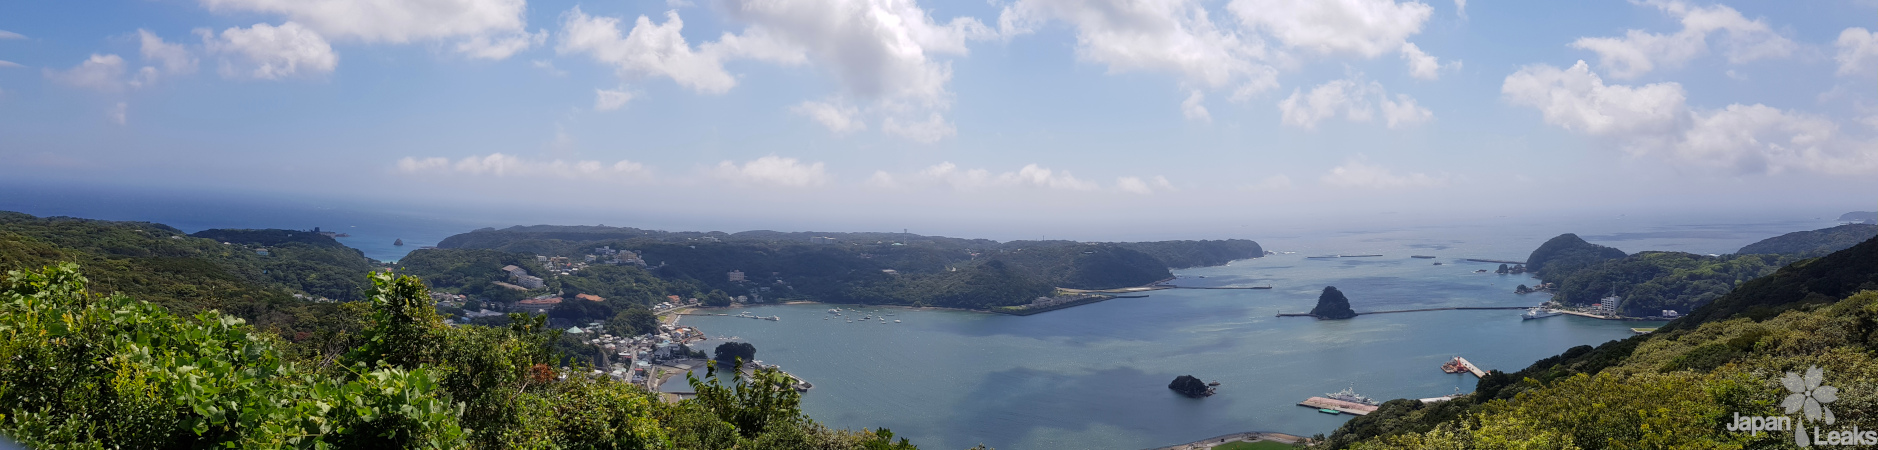 Ausblick auf die Küste Shimodas.